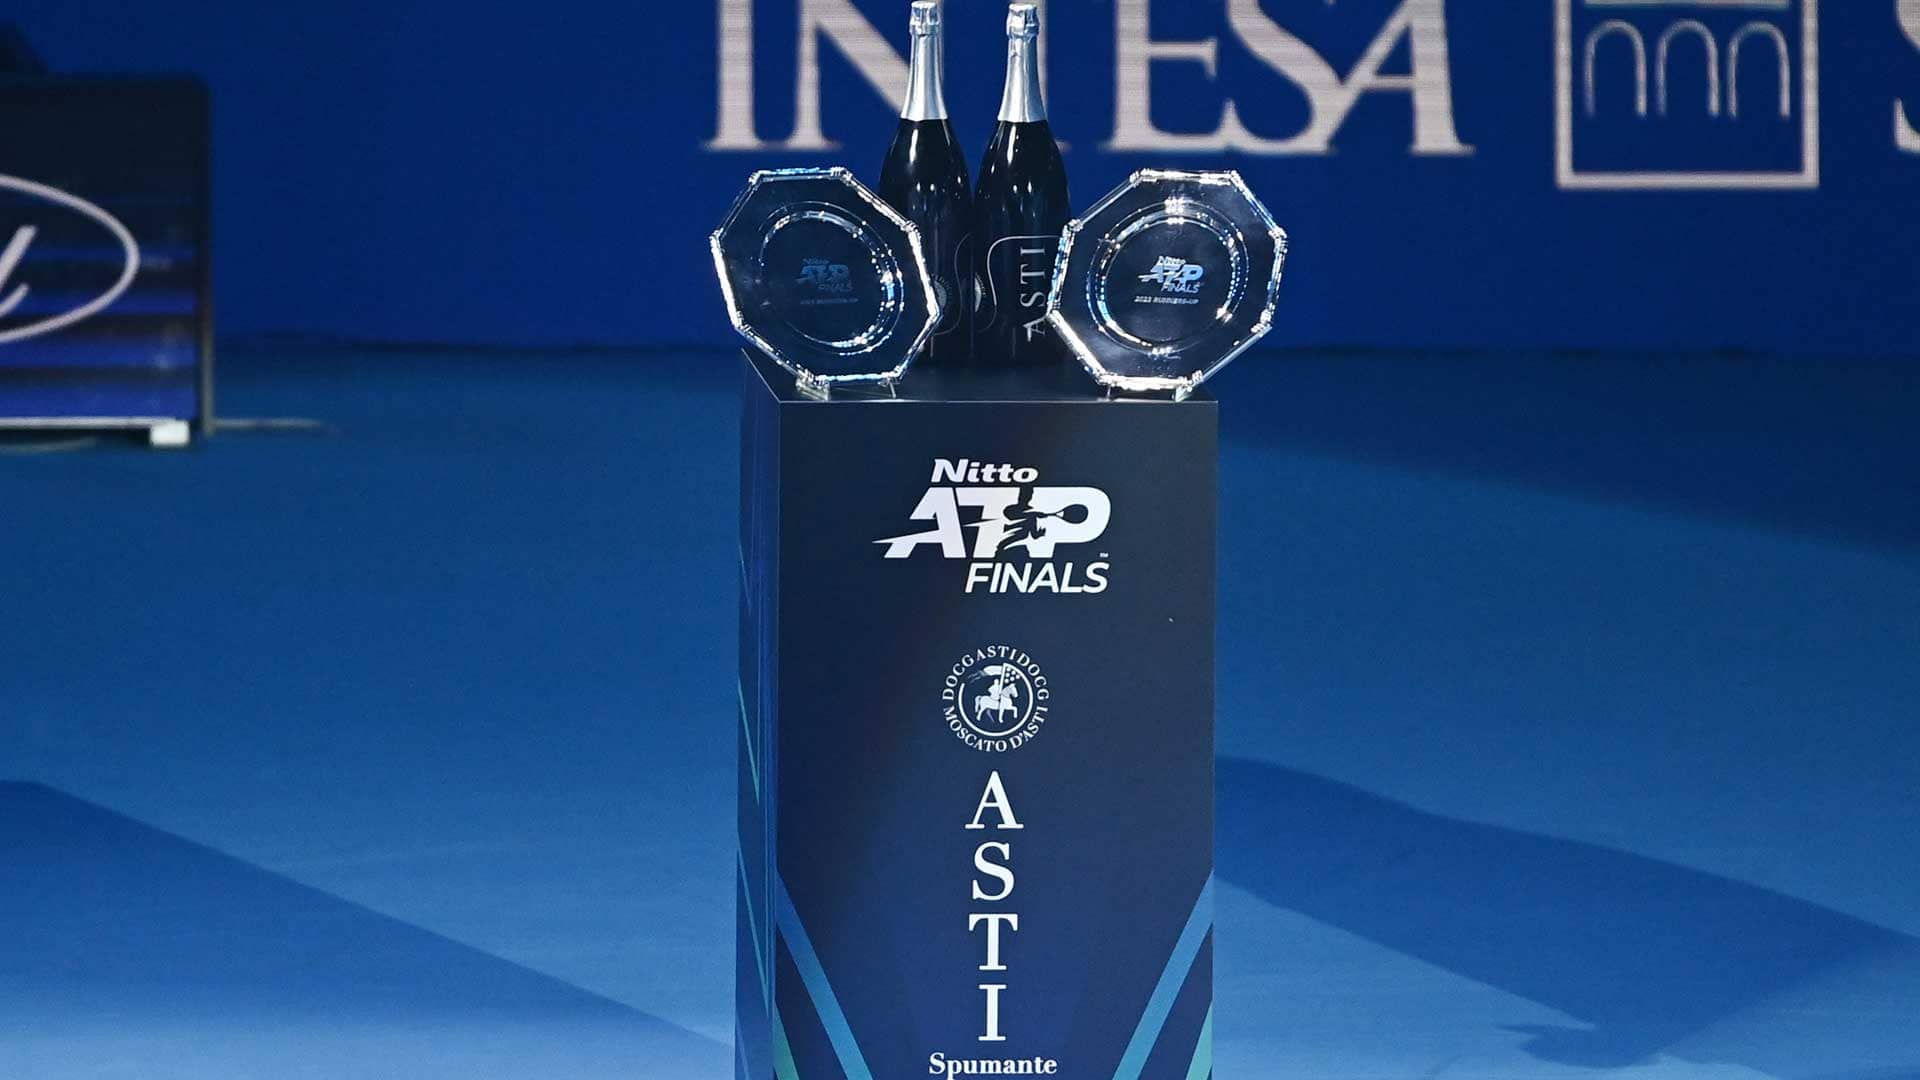 ATP extiende el acuerdo con Asti Docg dos años más